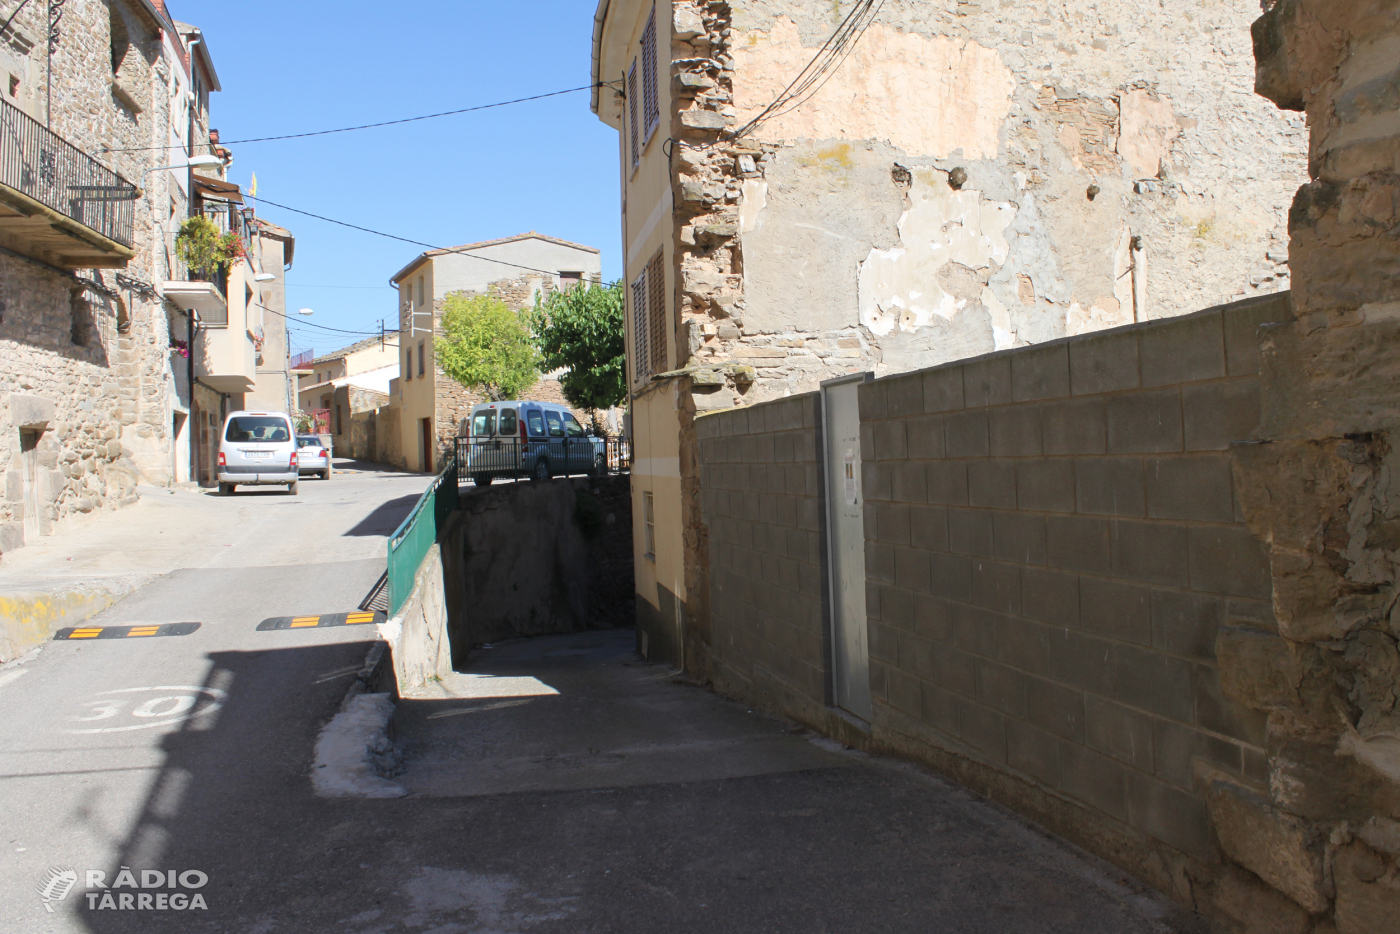 L’Ajuntament de Tàrrega habilitarà una zona d’estacionament gratuït al poble de Claravalls